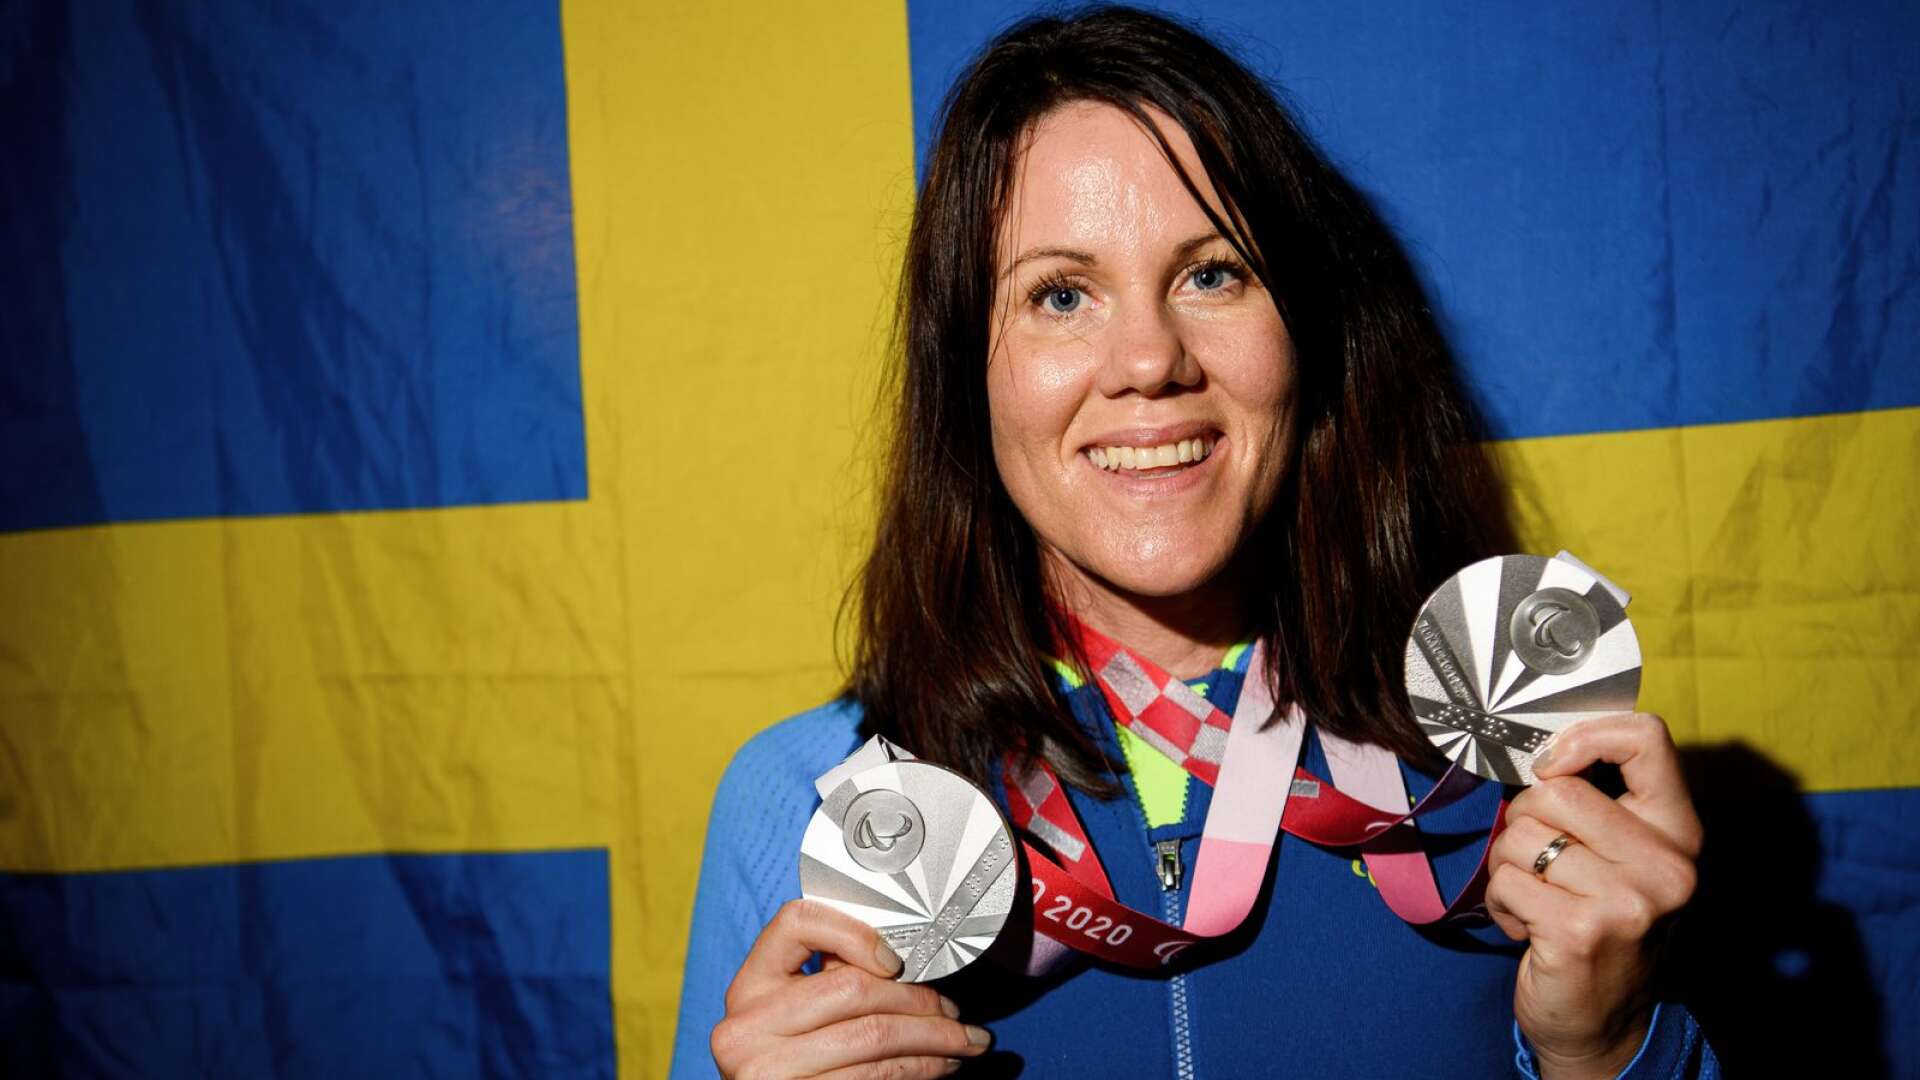 Anna Beck med sina medaljer från Paralympics.